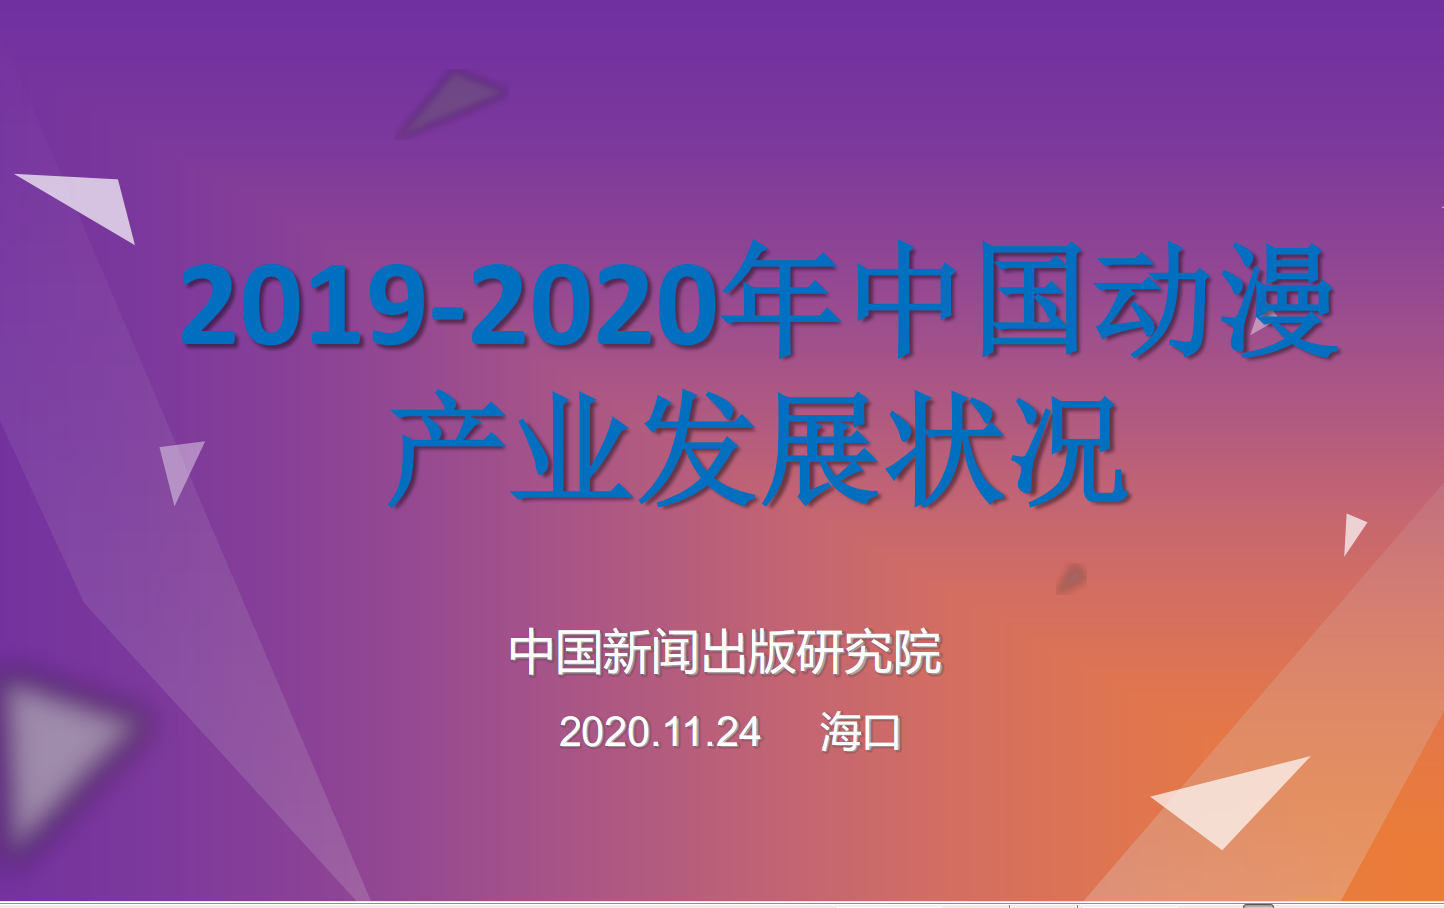 2019-2020中国动漫产业发展状况ㄨ